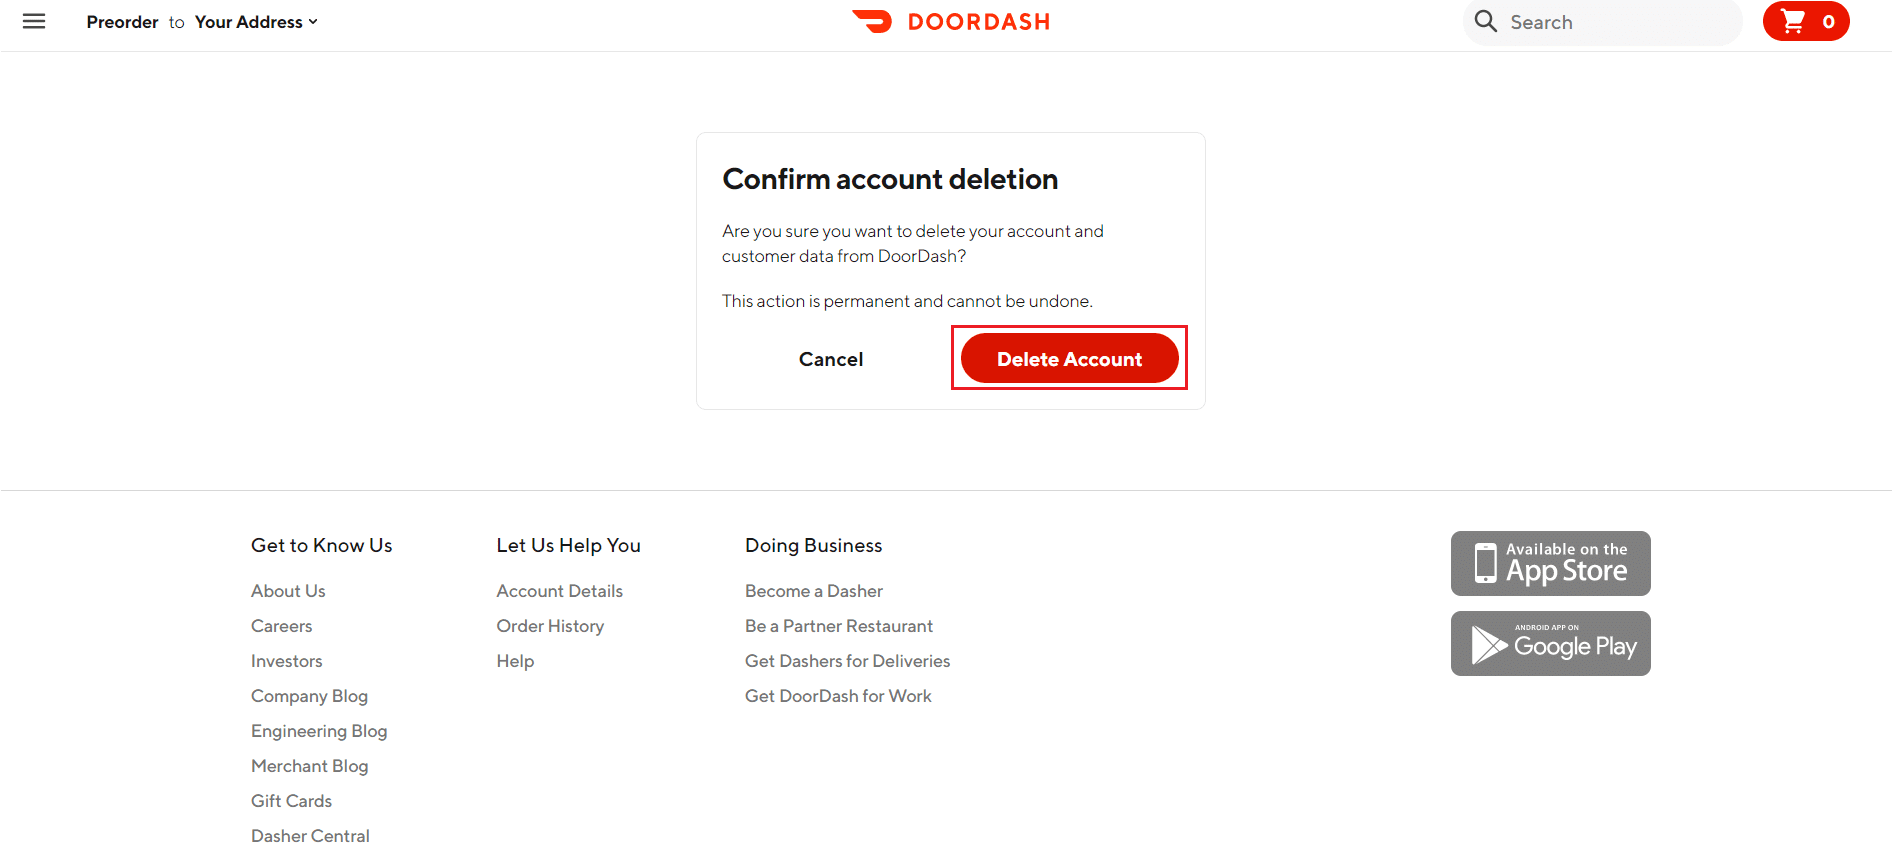 haga clic en eliminar cuenta para confirmar la eliminación de la cuenta en el sitio web de DoorDash